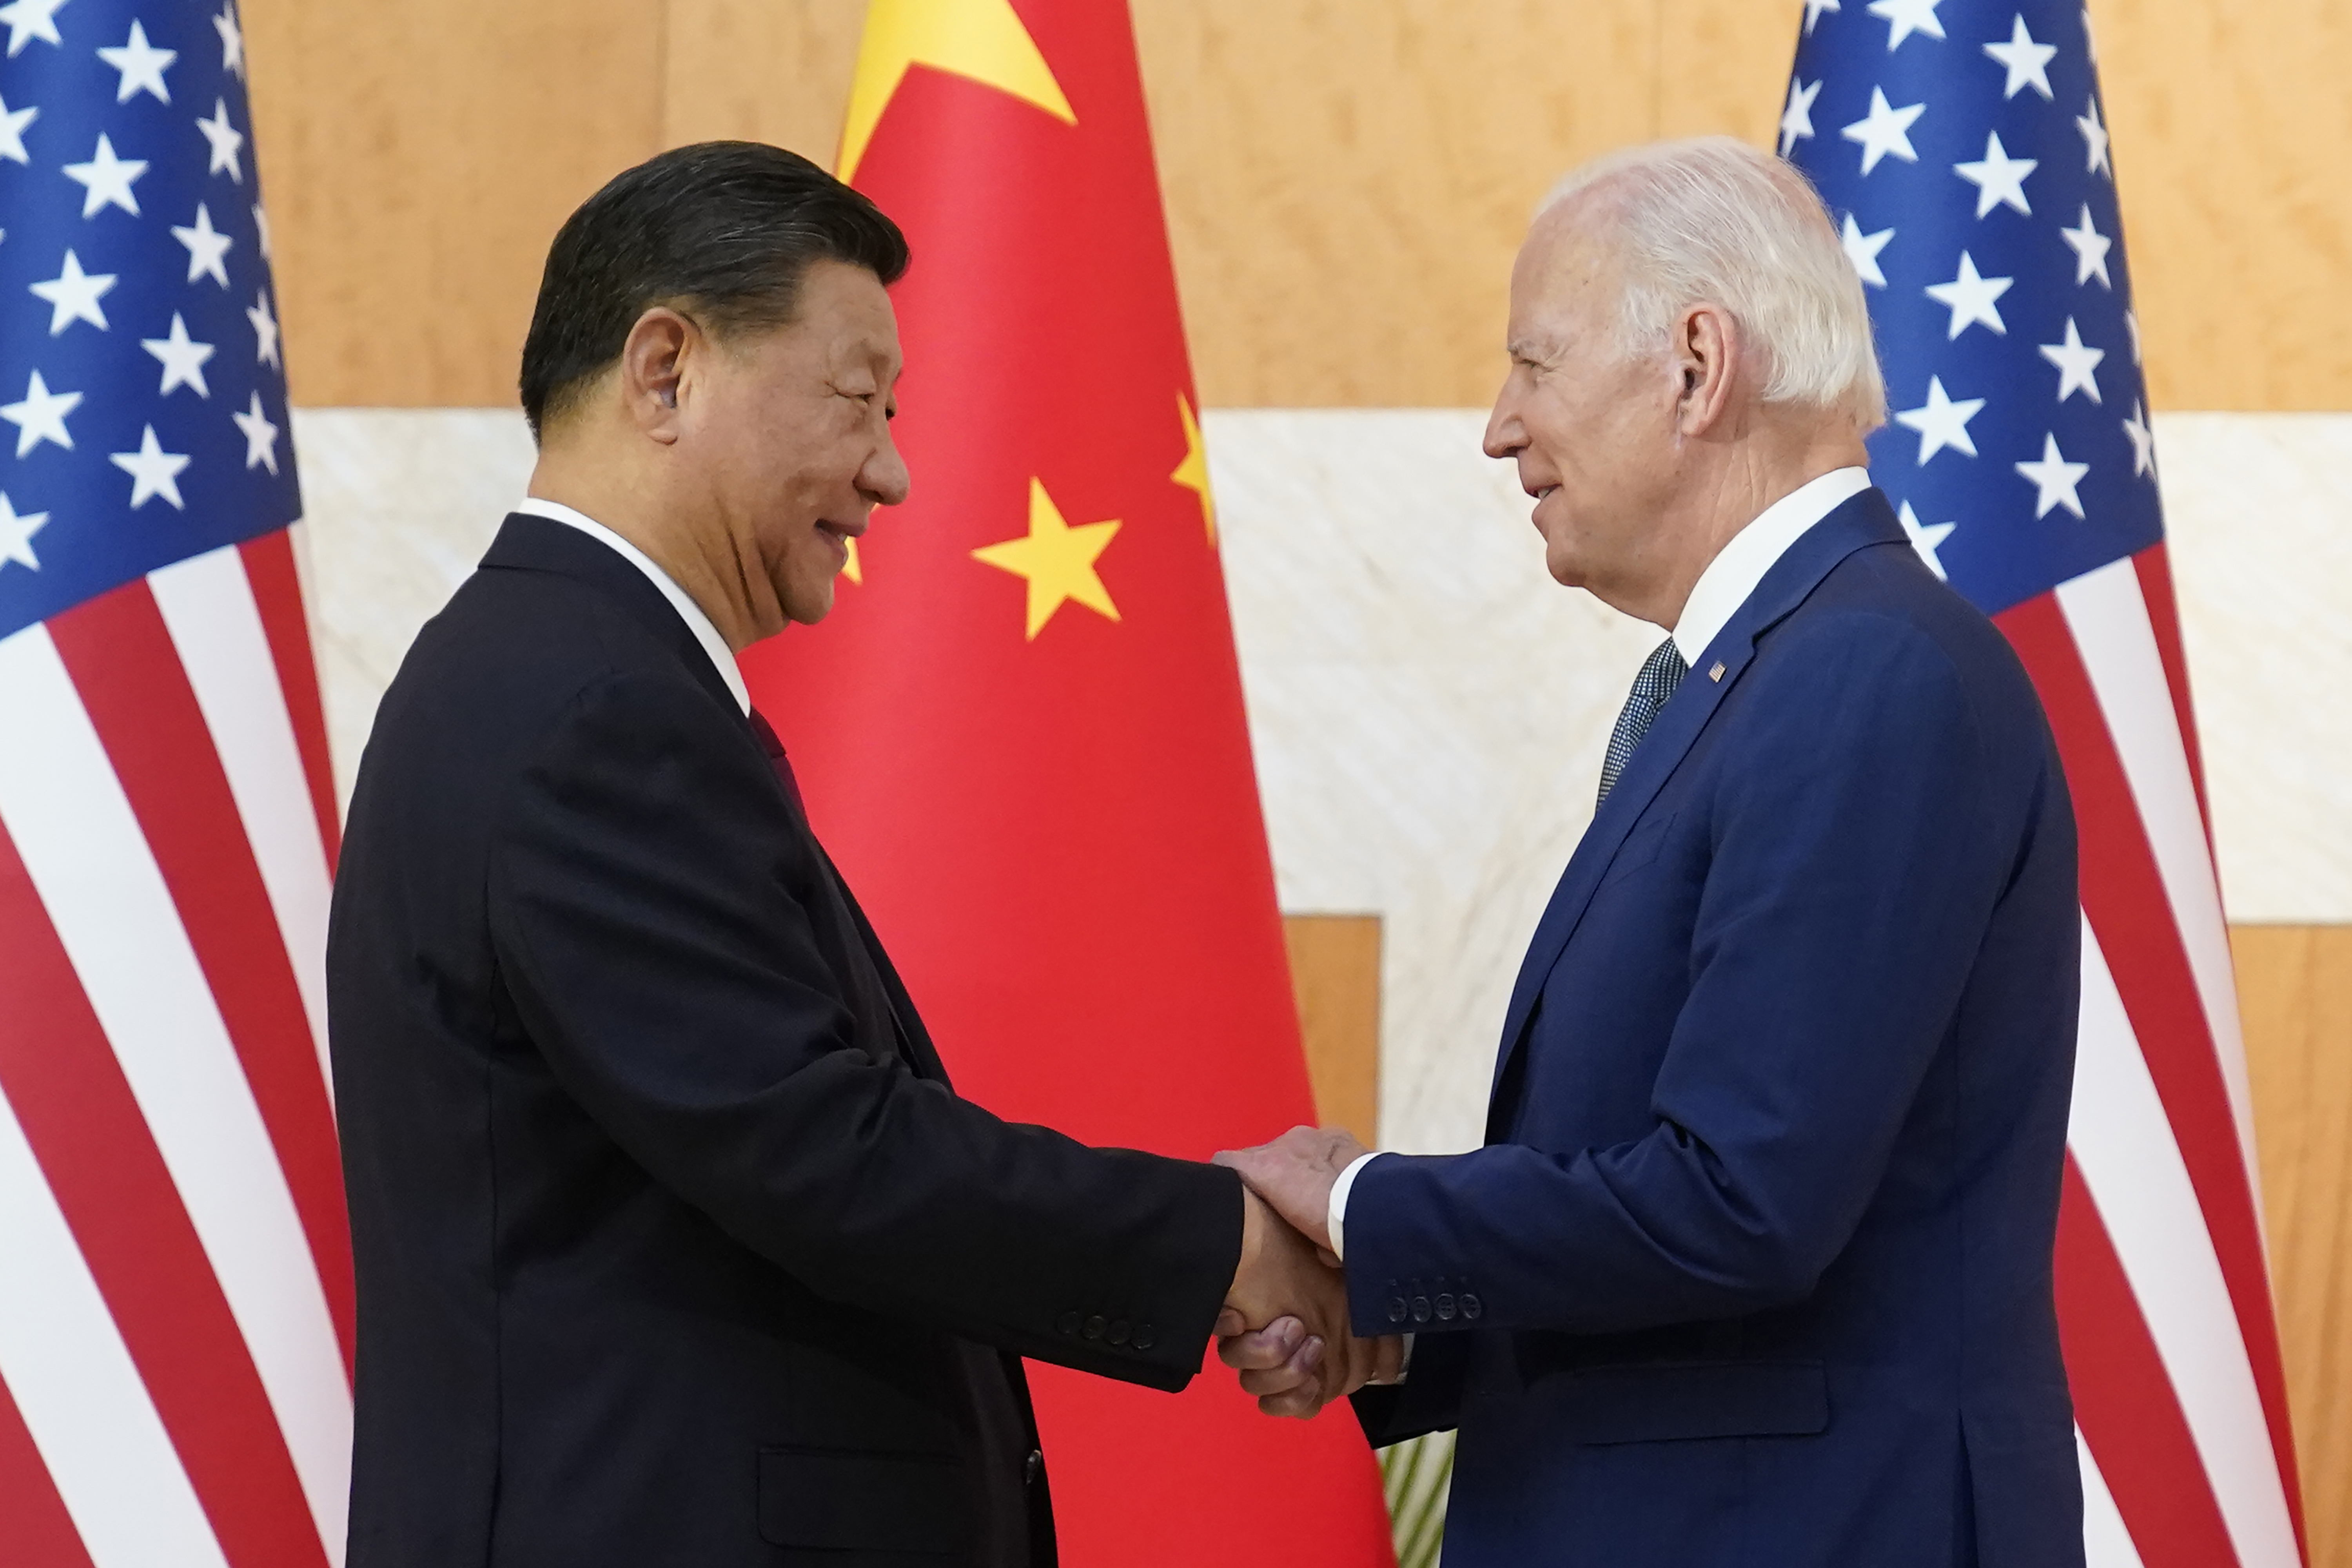 Biden membahas Taiwan dengan Xi dalam upaya menghindari ‘konflik’